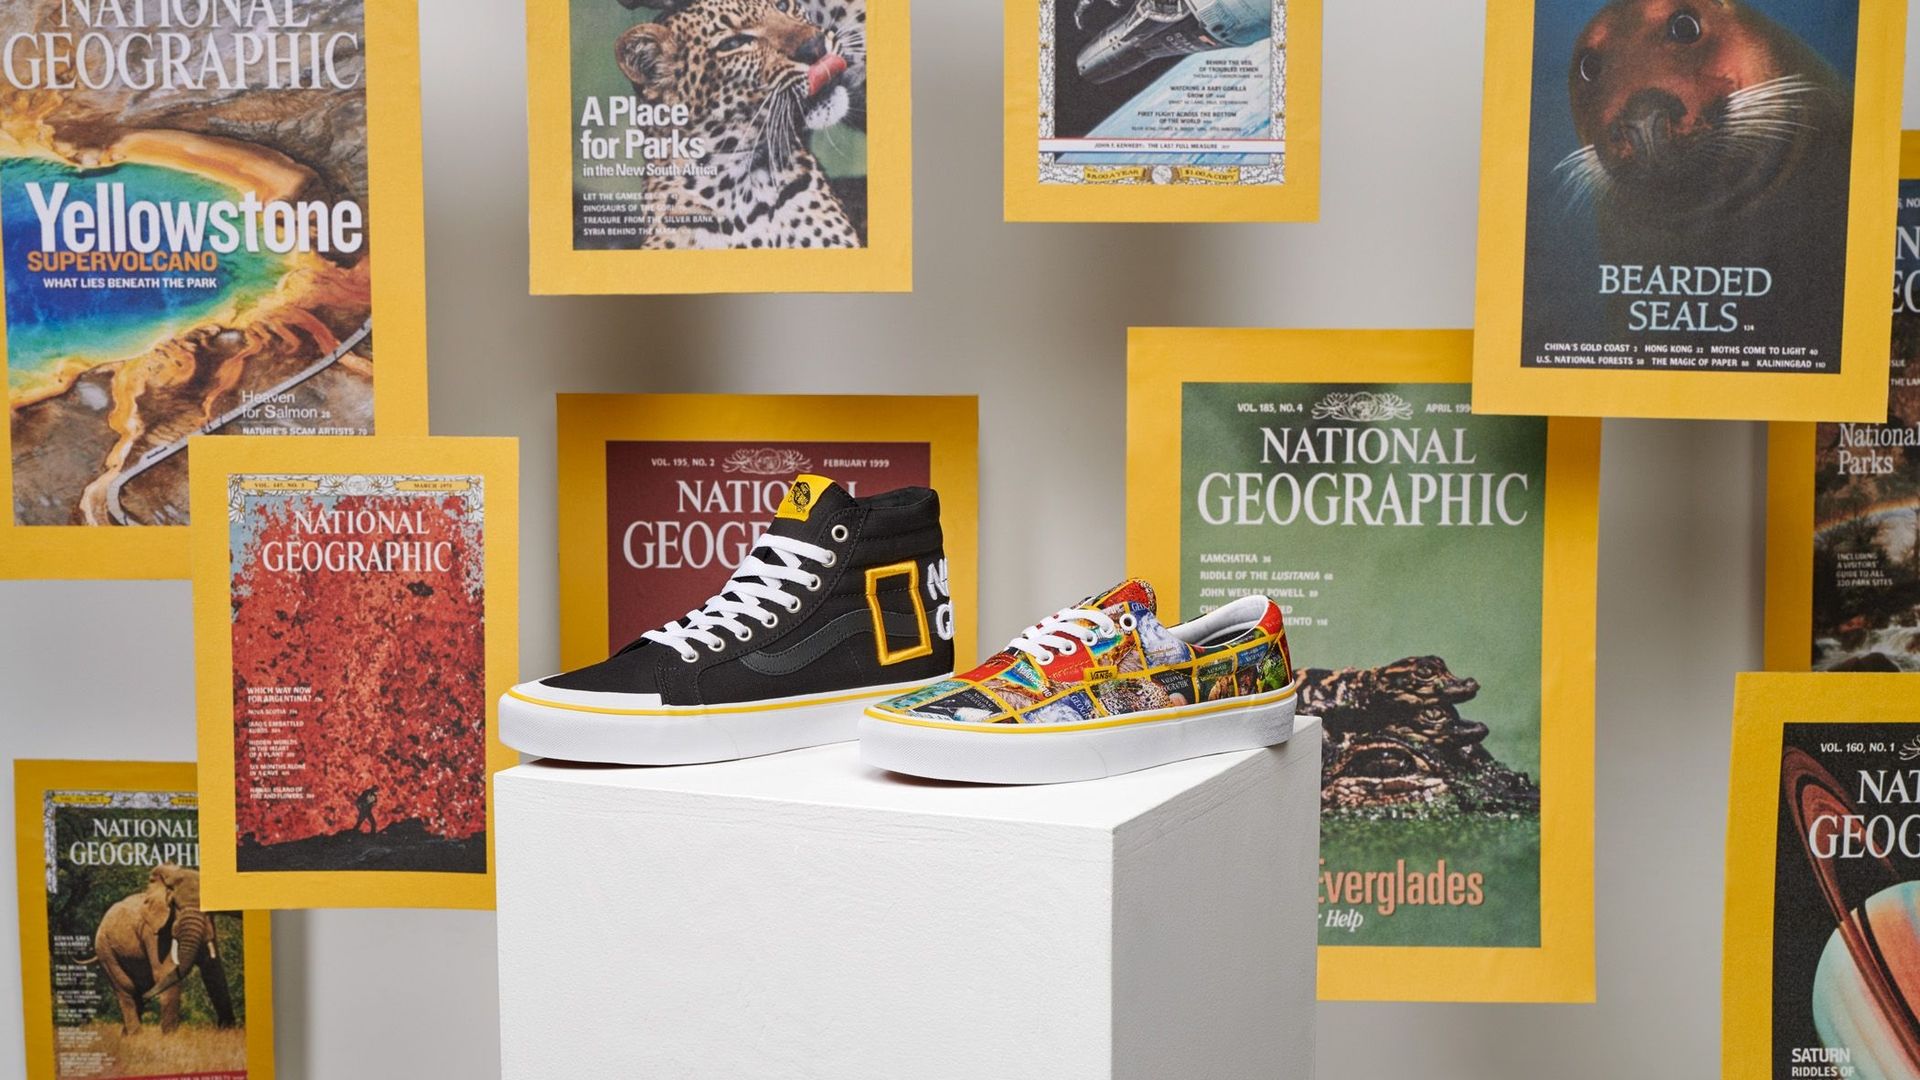 Vans rend hommage à National Geographic avec une collection de chaussures et de prêt-à-porter.